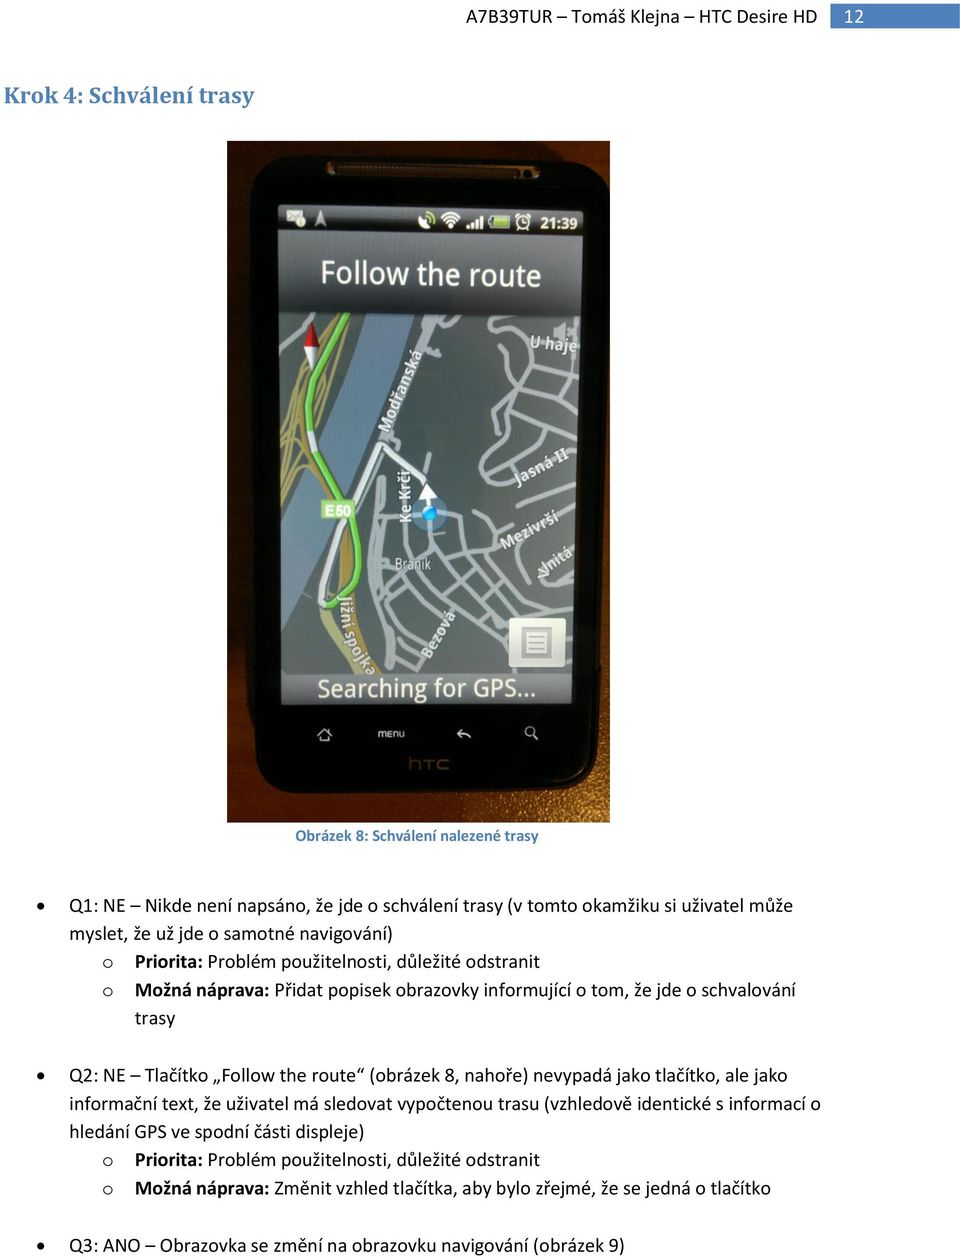 (obrázek 8, nahoře) nevypadá jako tlačítko, ale jako informační text, že uživatel má sledovat vypočtenou trasu (vzhledově identické s informací o hledání GPS ve spodní části displeje) o